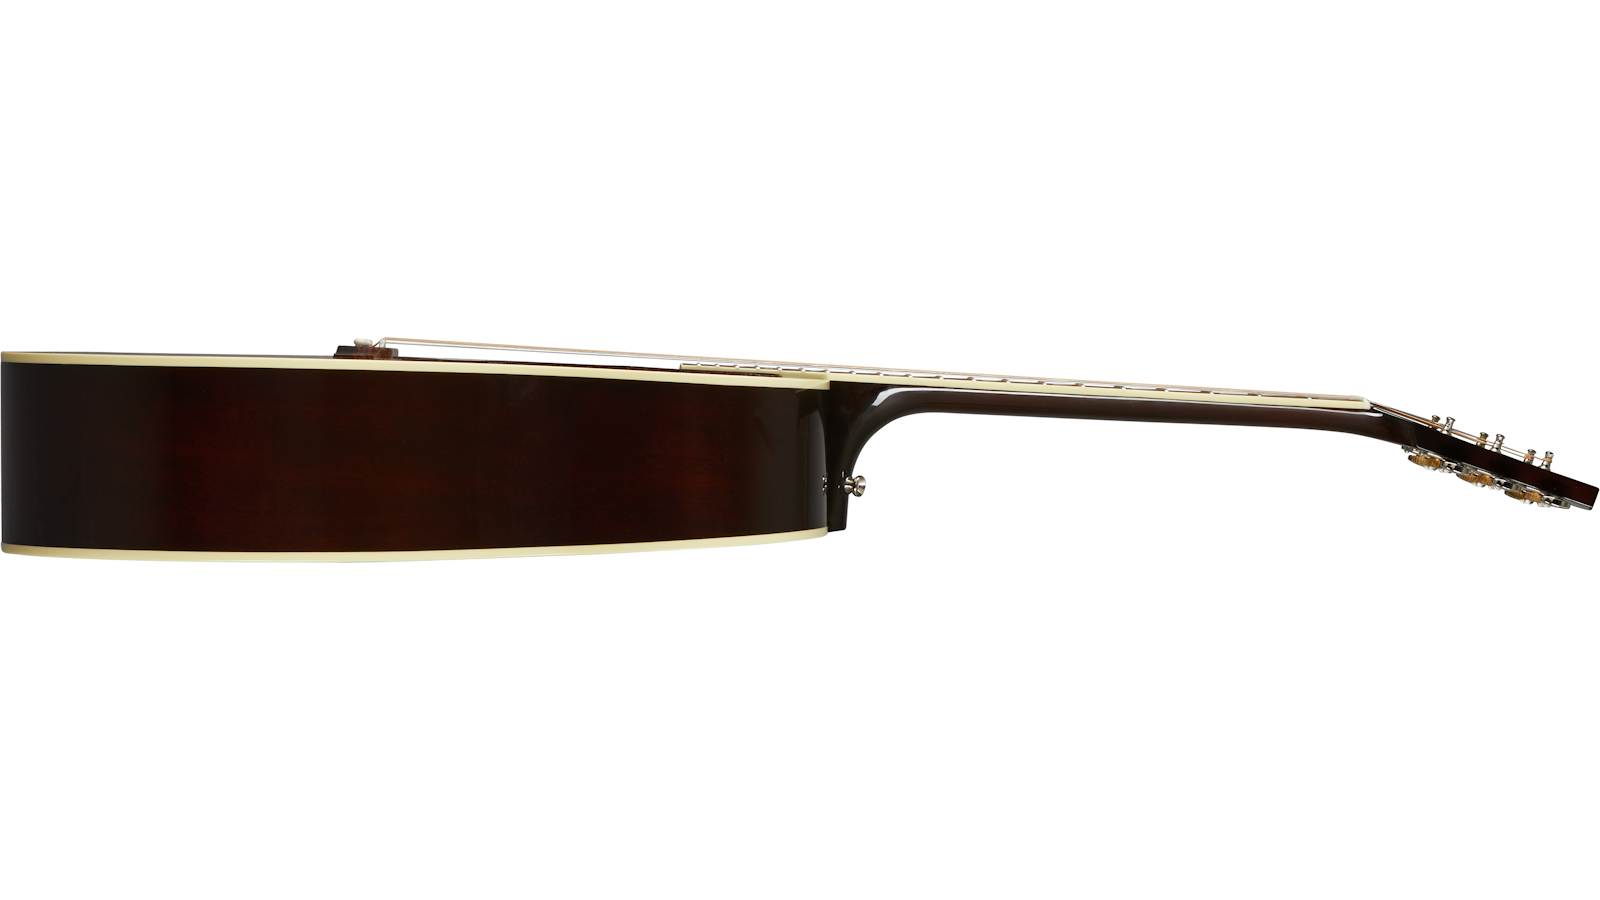 Gibson Southern Jumbo Original Dreanought Epicea Acajou Rw - Vintage Sunburst - Electro acoustic guitar - Variation 2